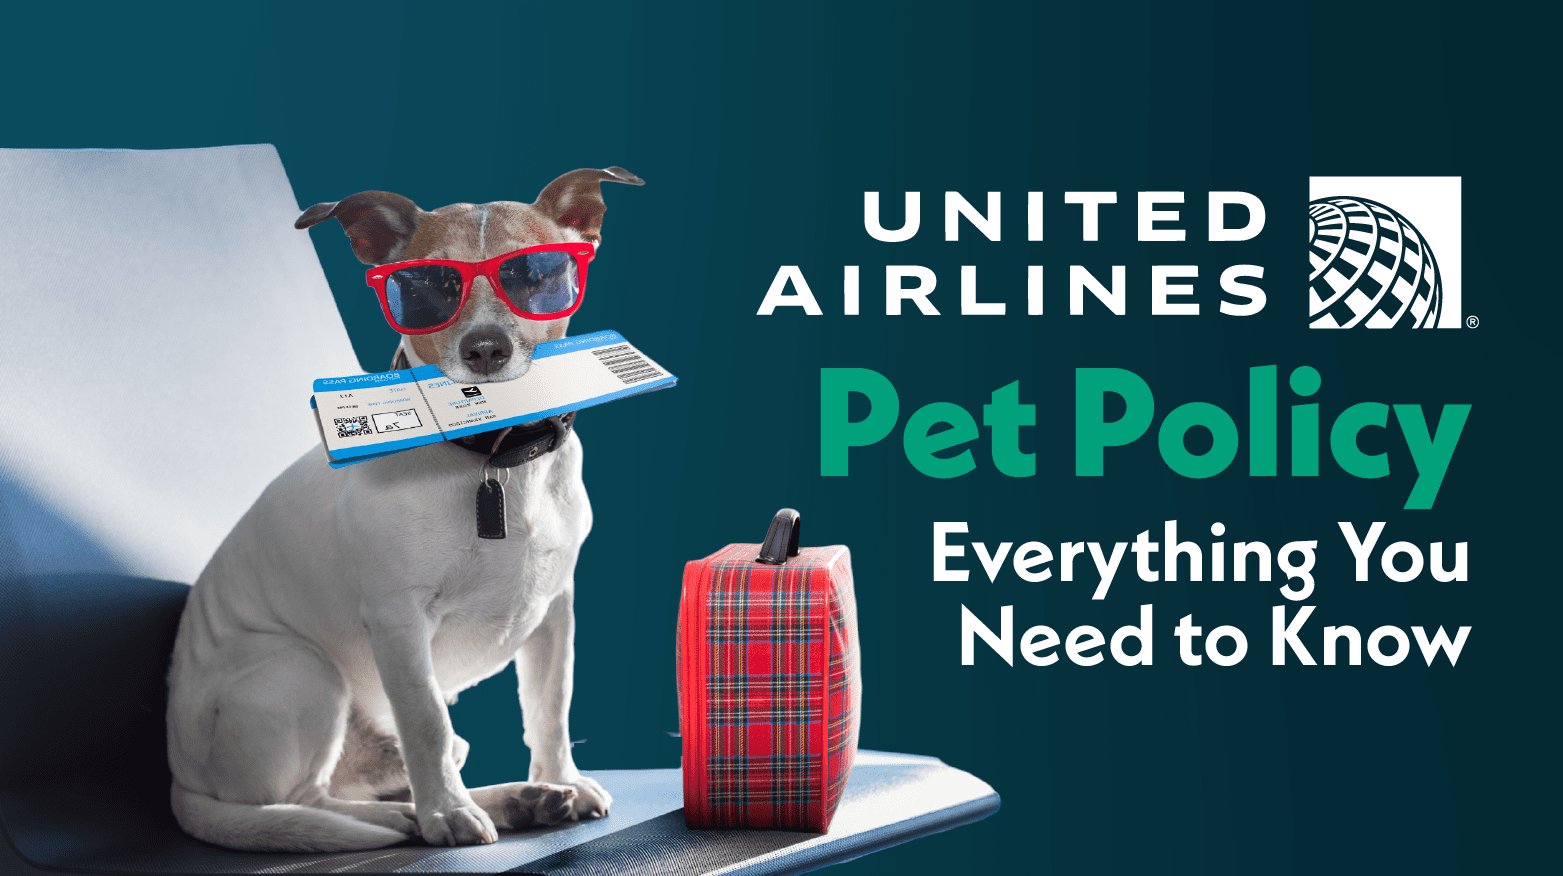 Jakie rodzaje karmy dla psów są dozwolone w samolotach?